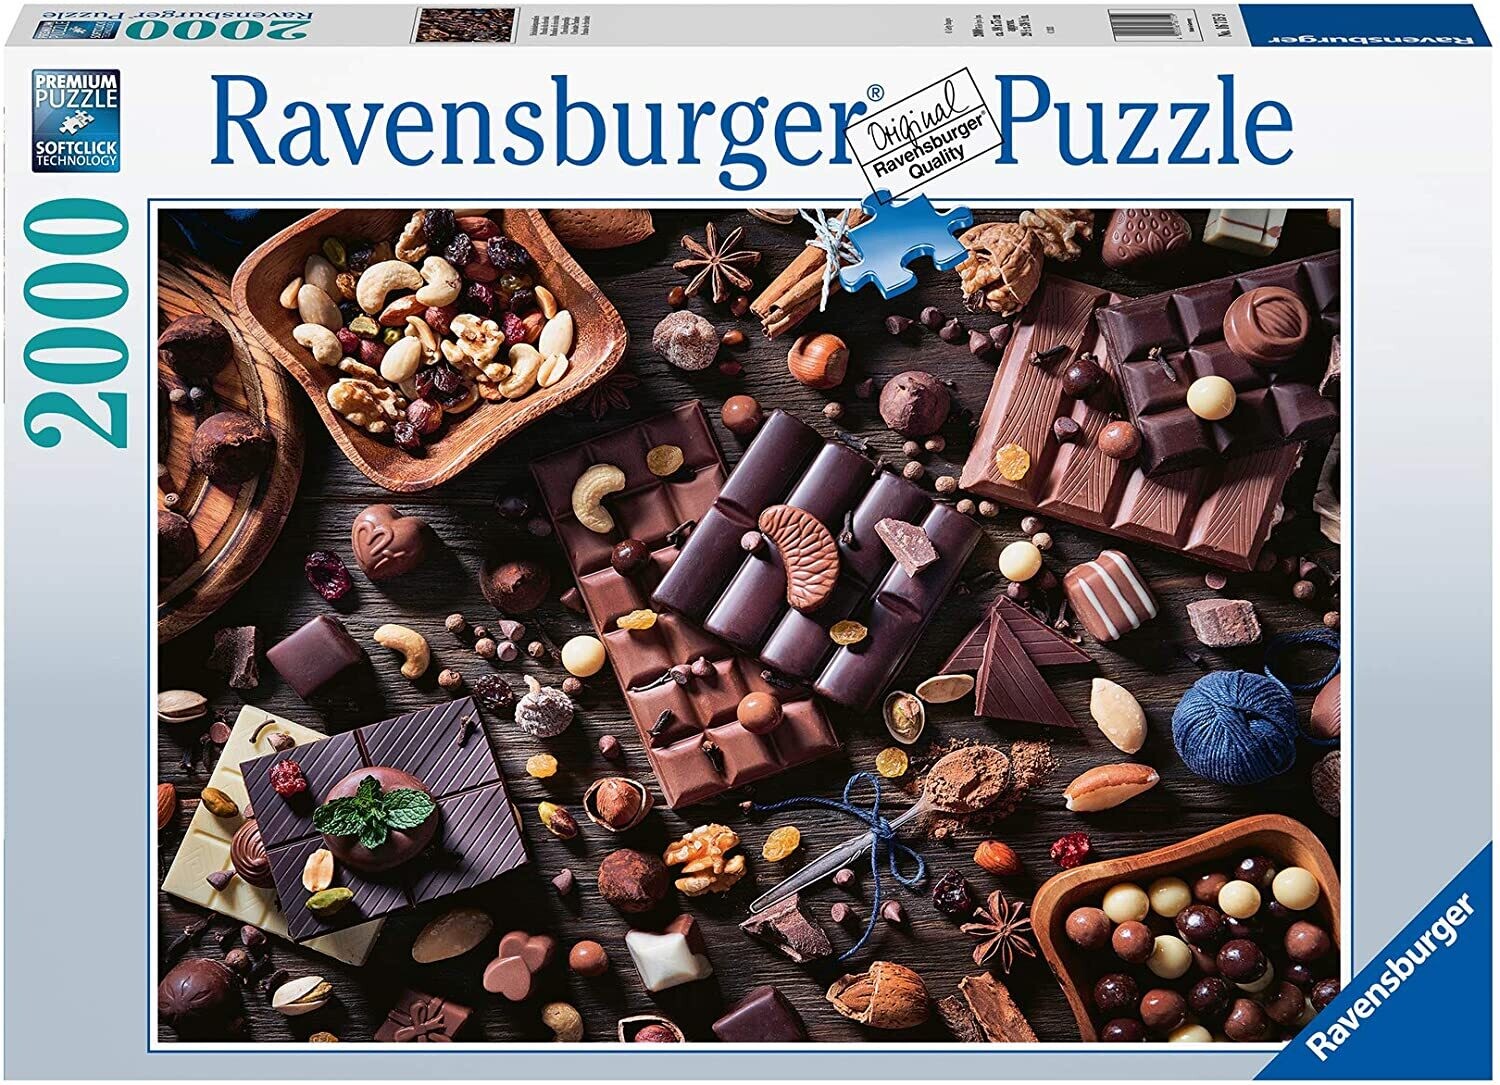 Ravensburger 16715 Chocolate Paradise Puzzle